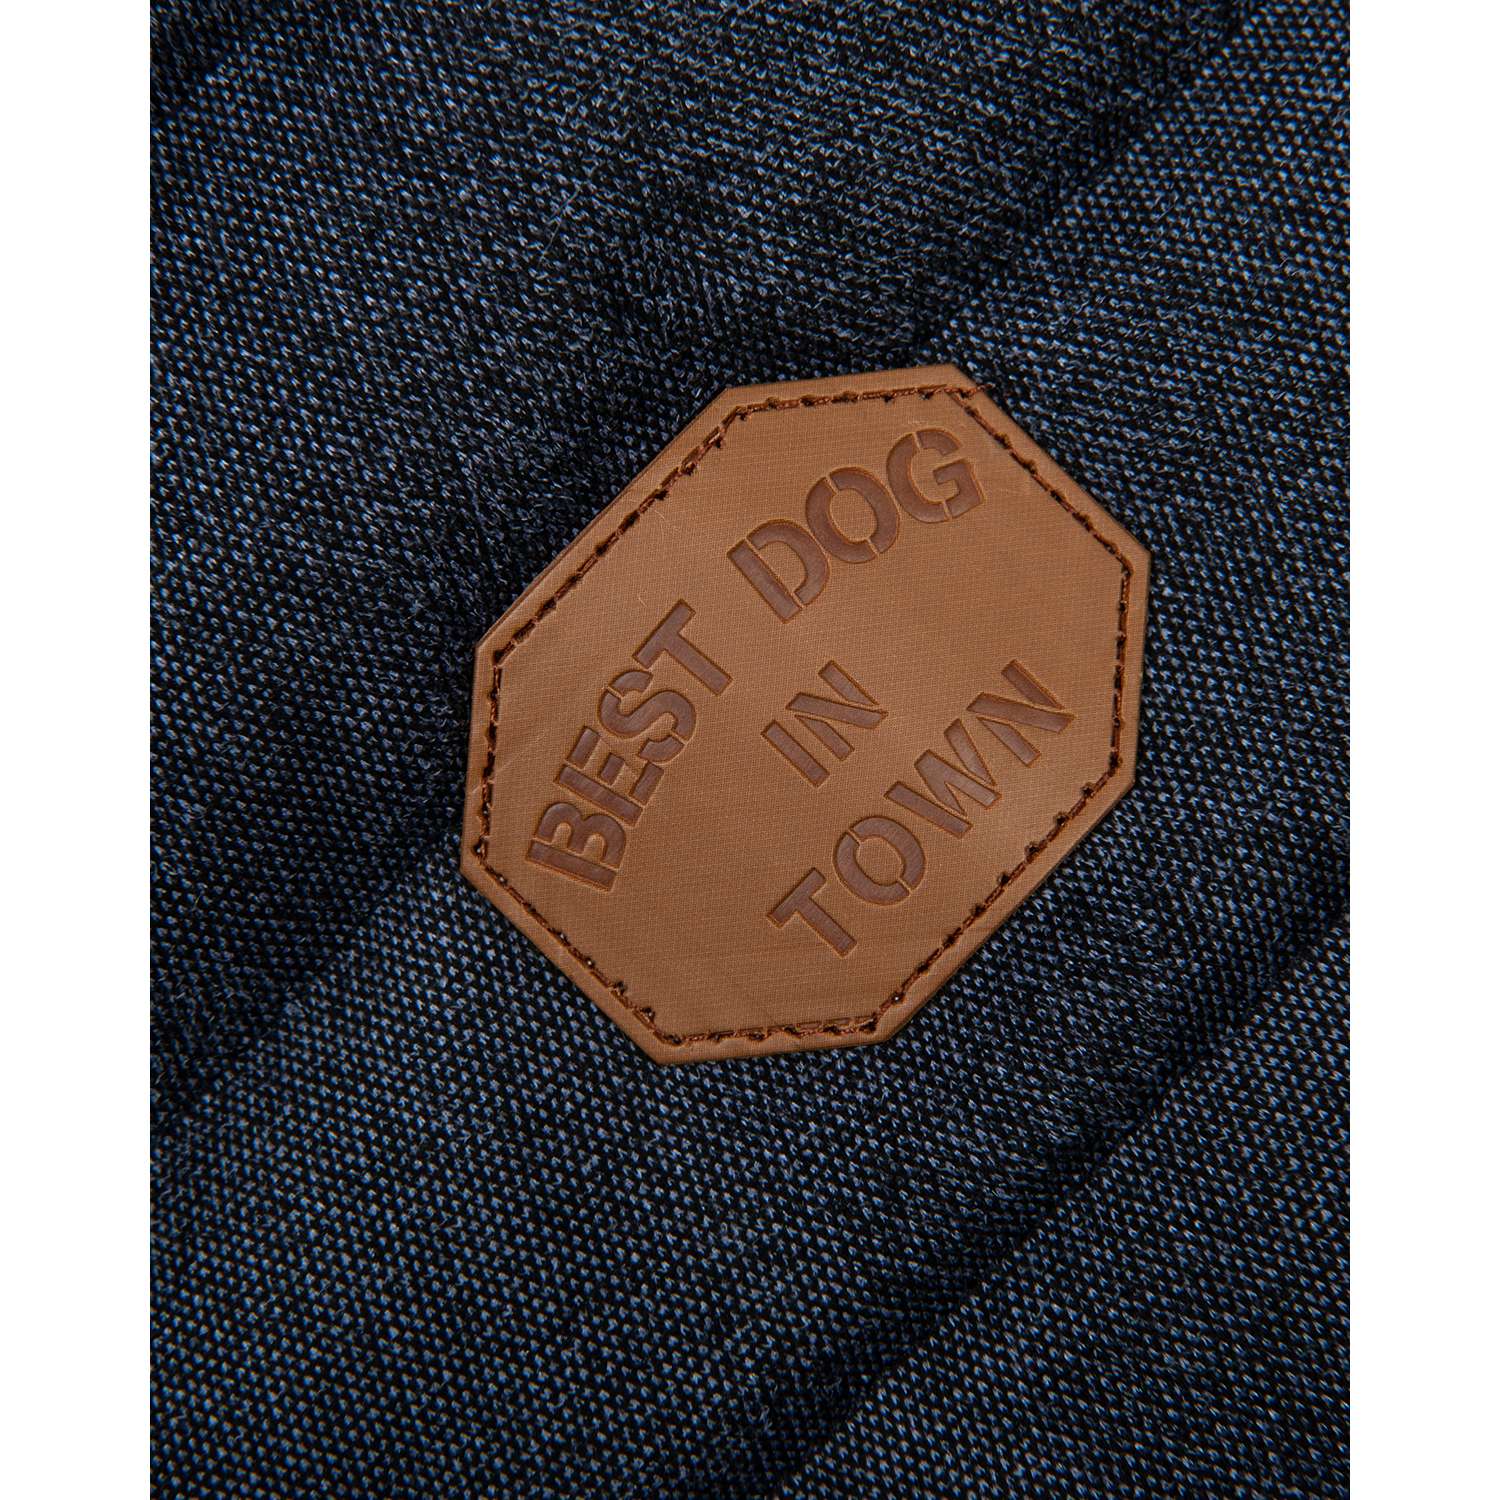 Куртка для собак Зоозавр тёмно-синяя 25 - фото 3